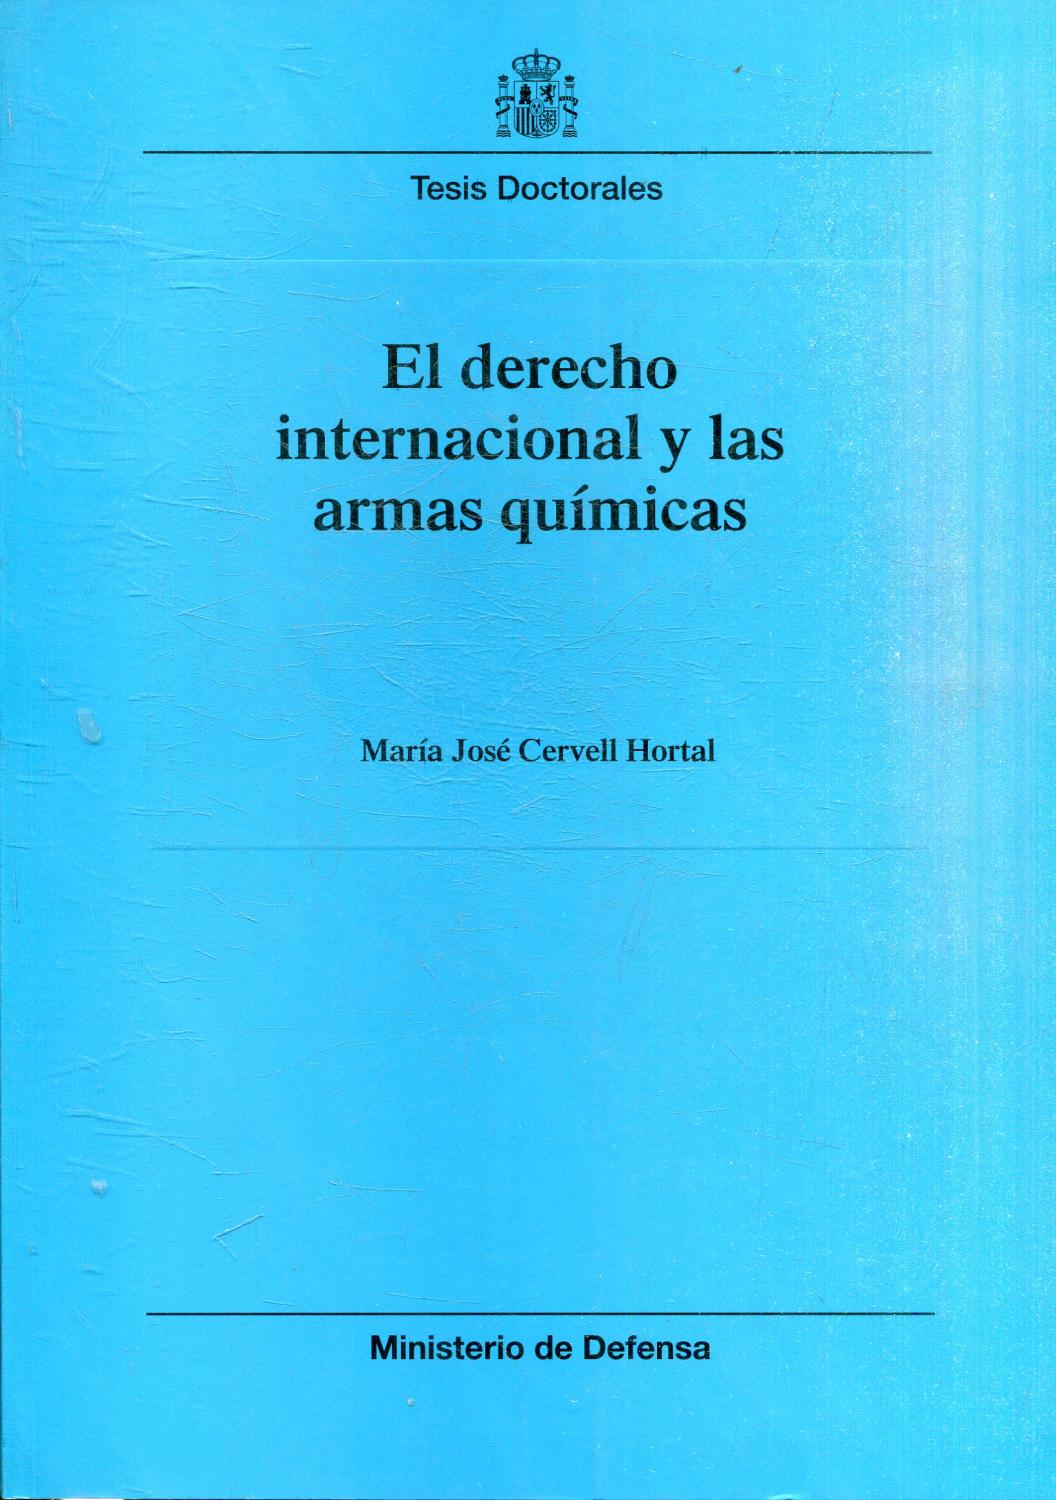 EL DERECHO INTERNACIONAL Y LAS ARMAS QUIMICAS. - CERVELL HORTALL, Maria Jose.